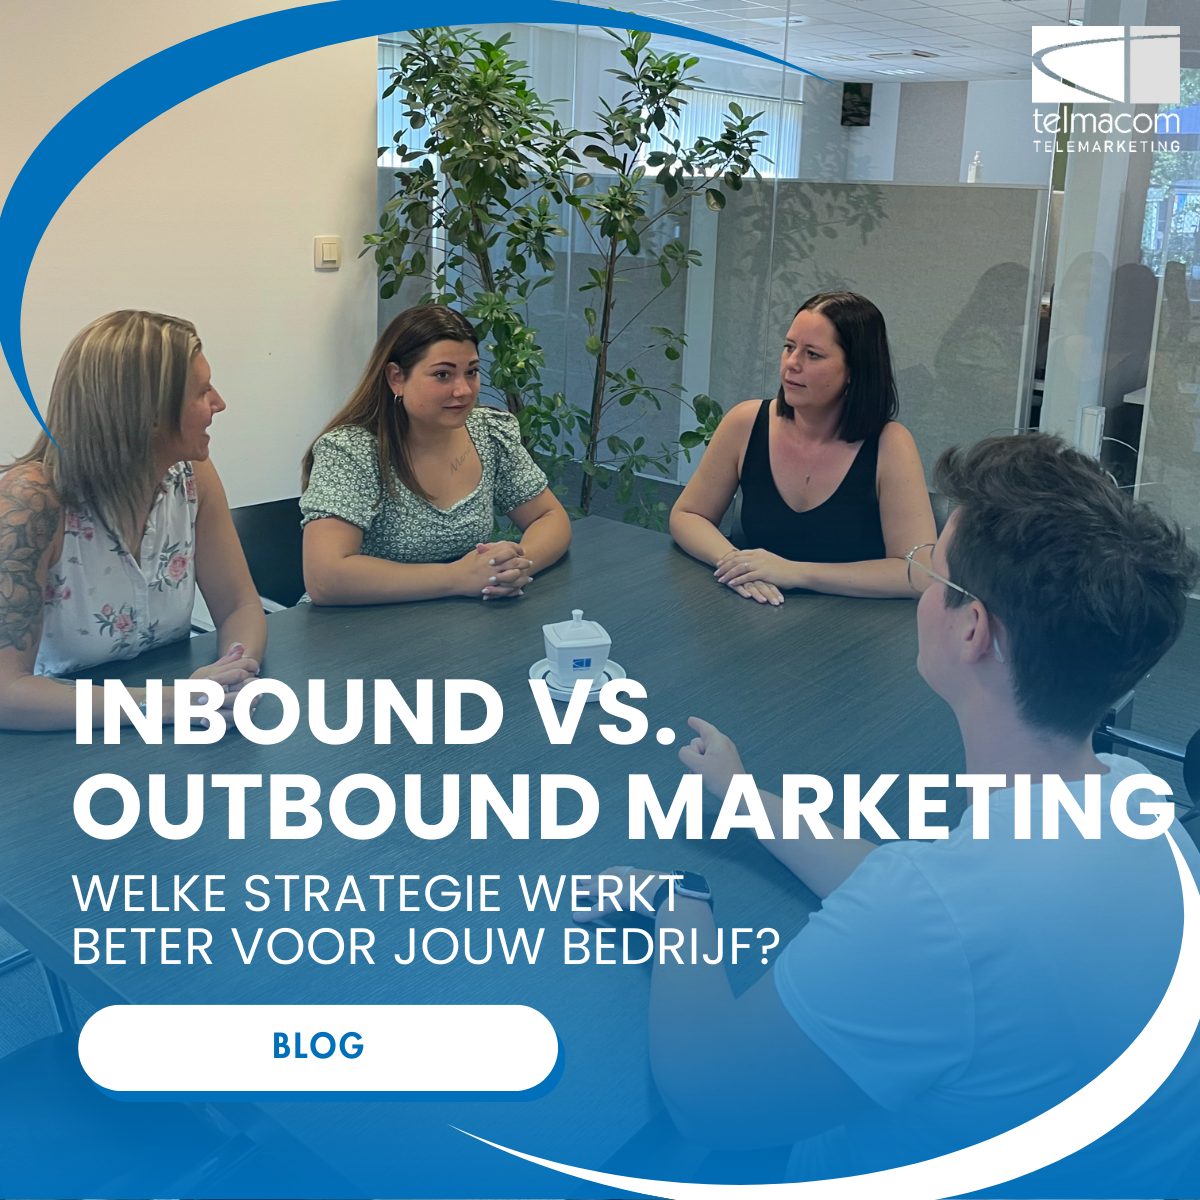 Inbound vs. Outbound Marketing: Welke strategie werkt best voor uw bedrijf?